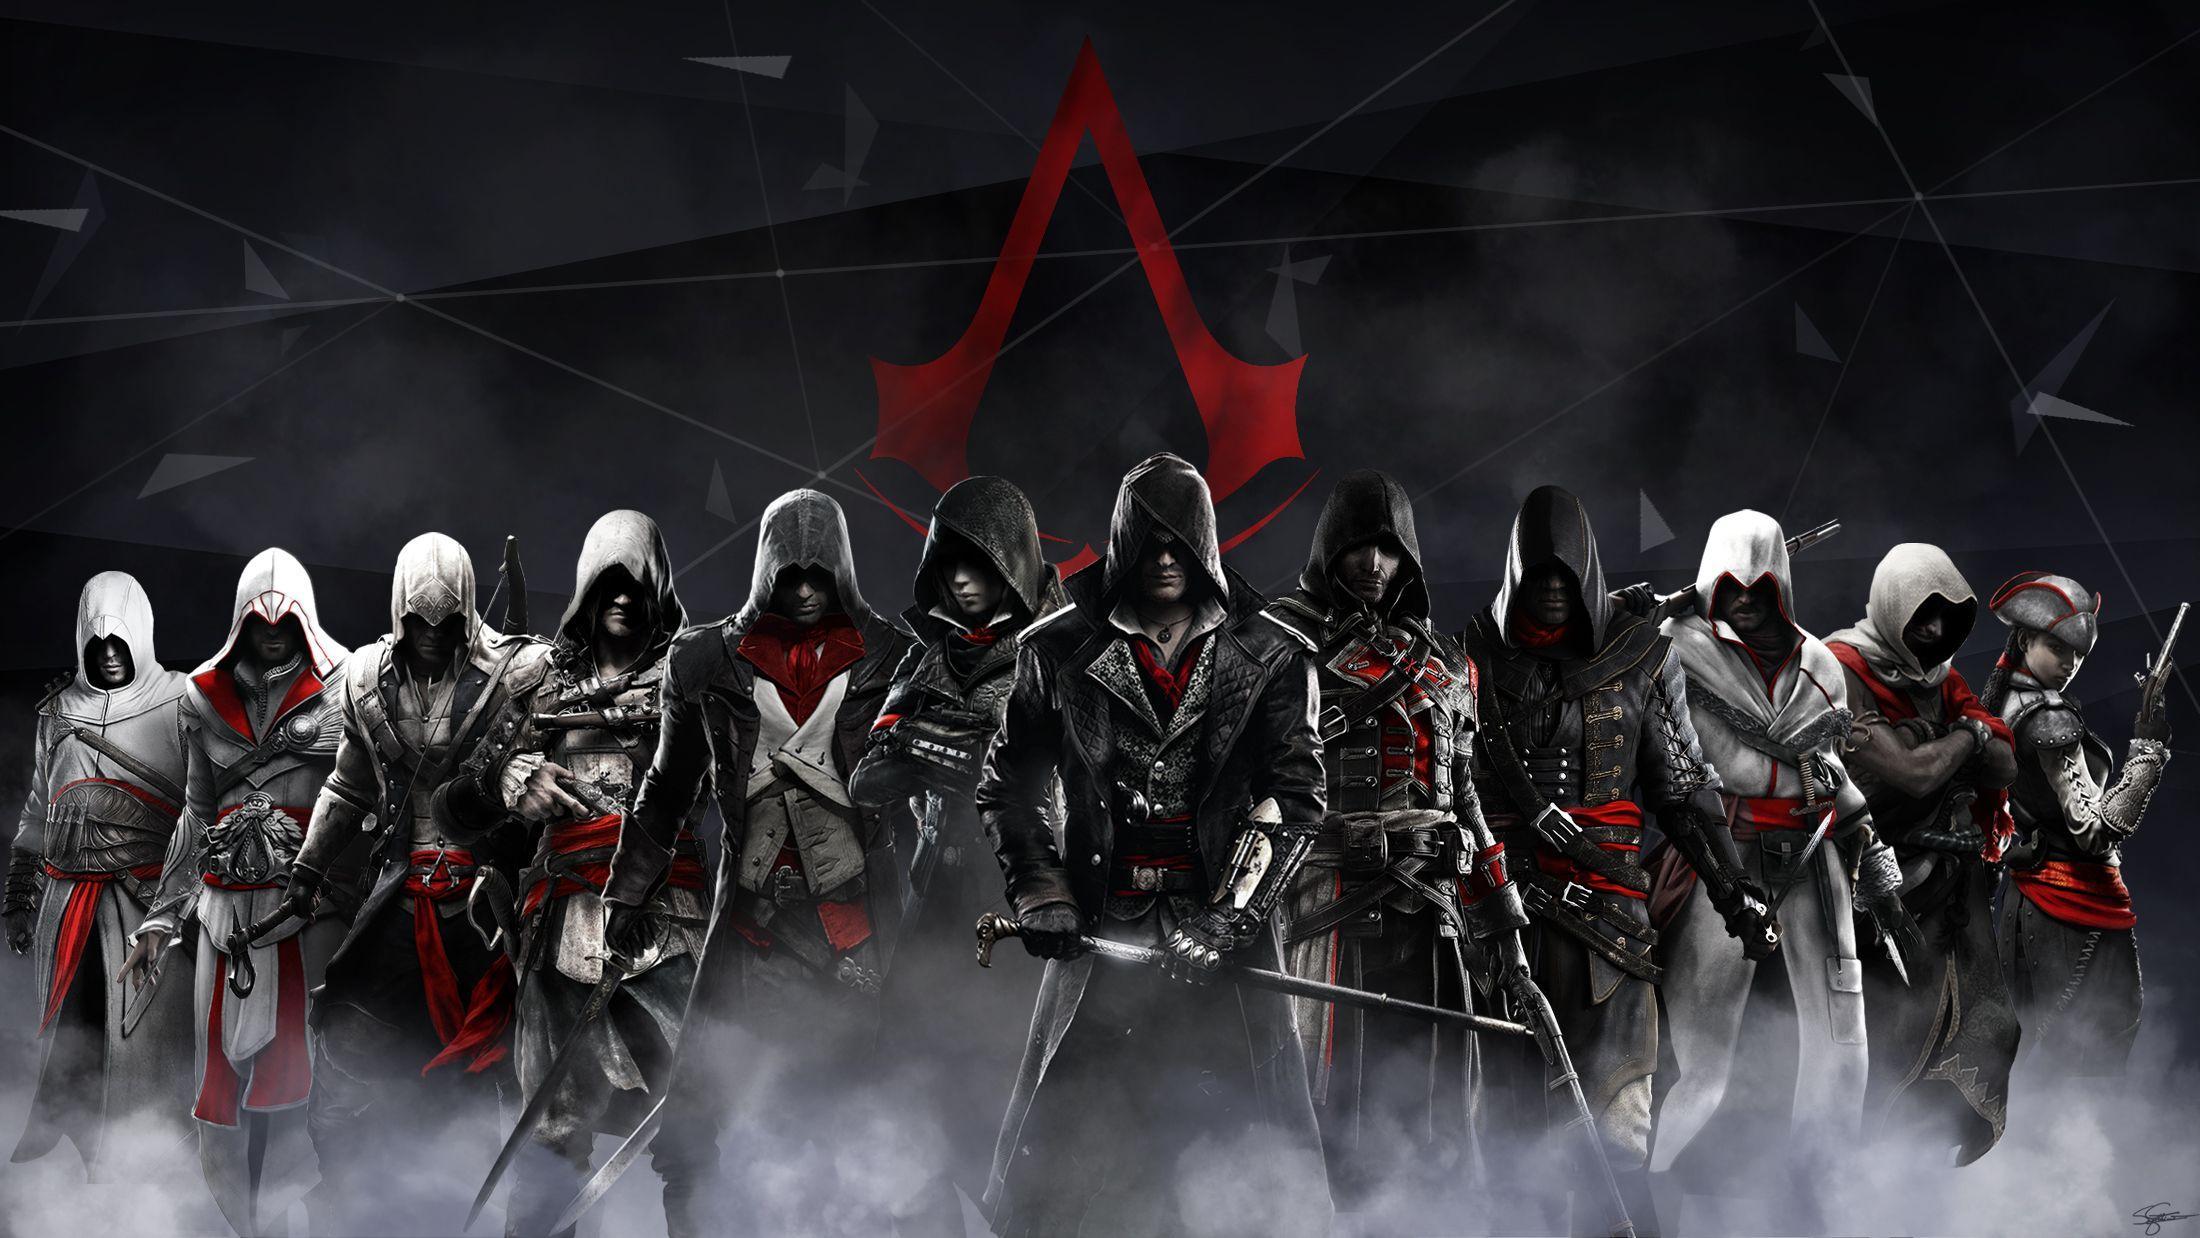 about Assassins Creed HD. Assassins